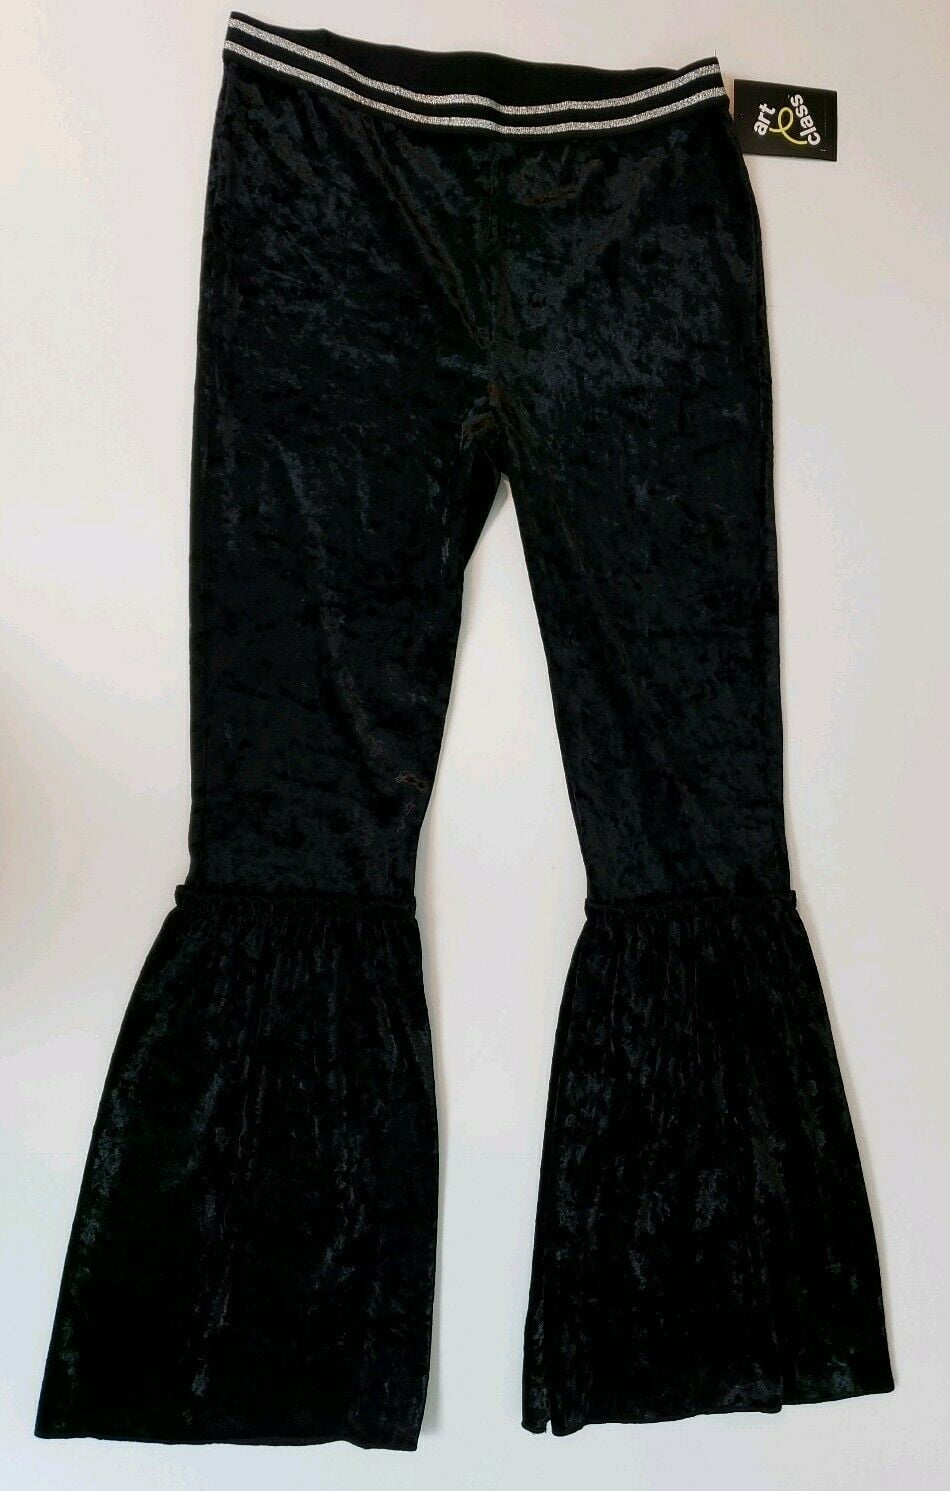 Large 10/12 Girls Black Velvety Fuzzy Leggings Pants Art Class New 